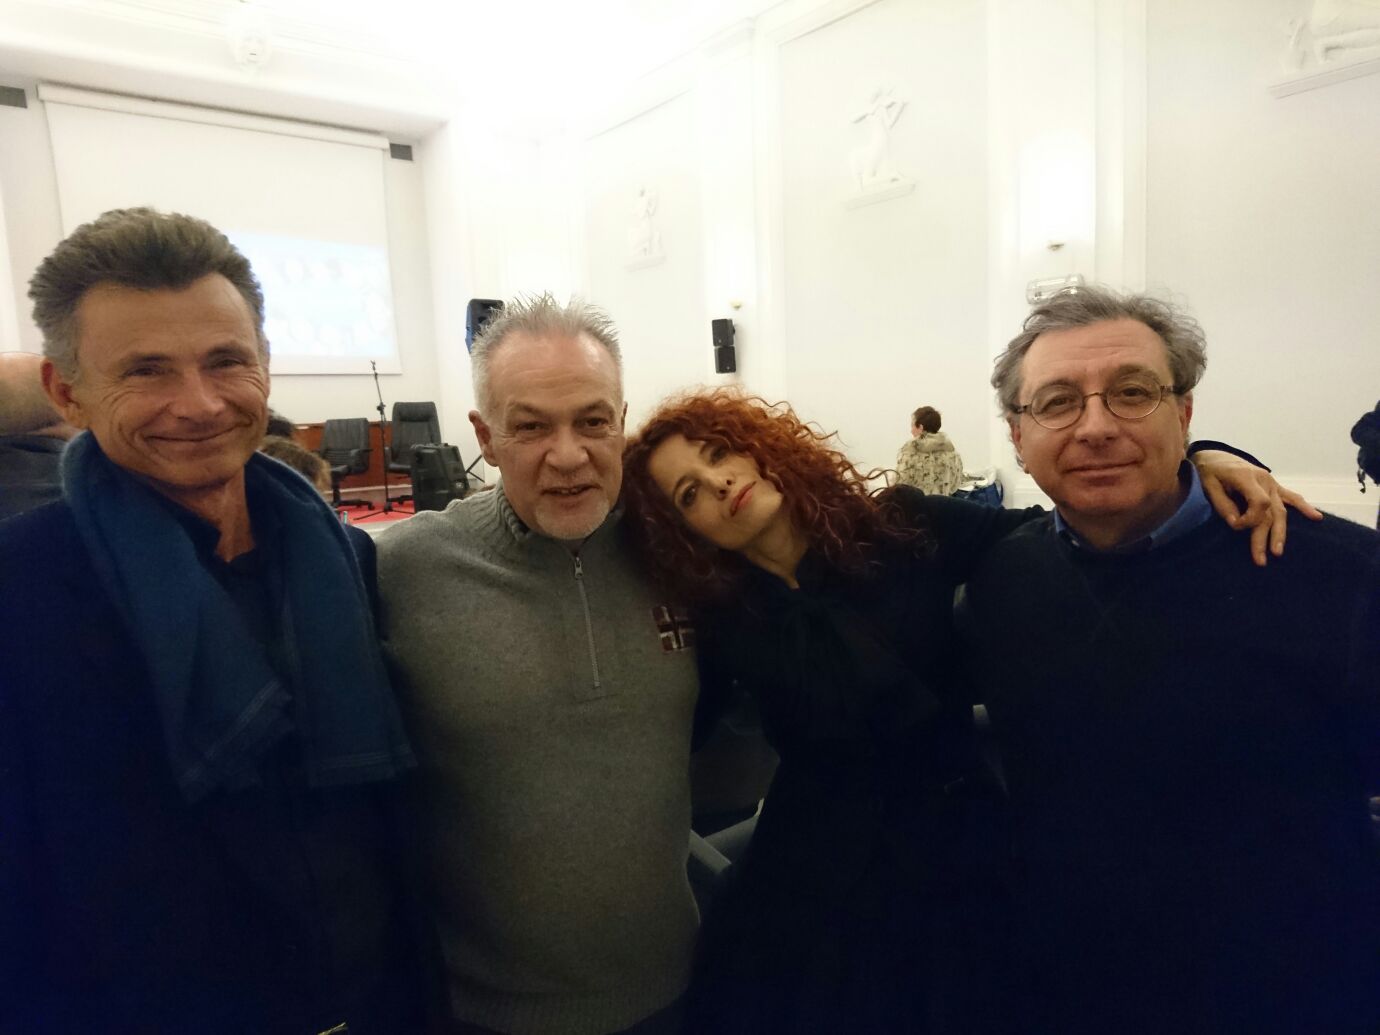 Carlo Bellincampi, Ezio Alessio Gensini, Rossella Seno e Leonardo Santoli ©Claudia Fiorelli